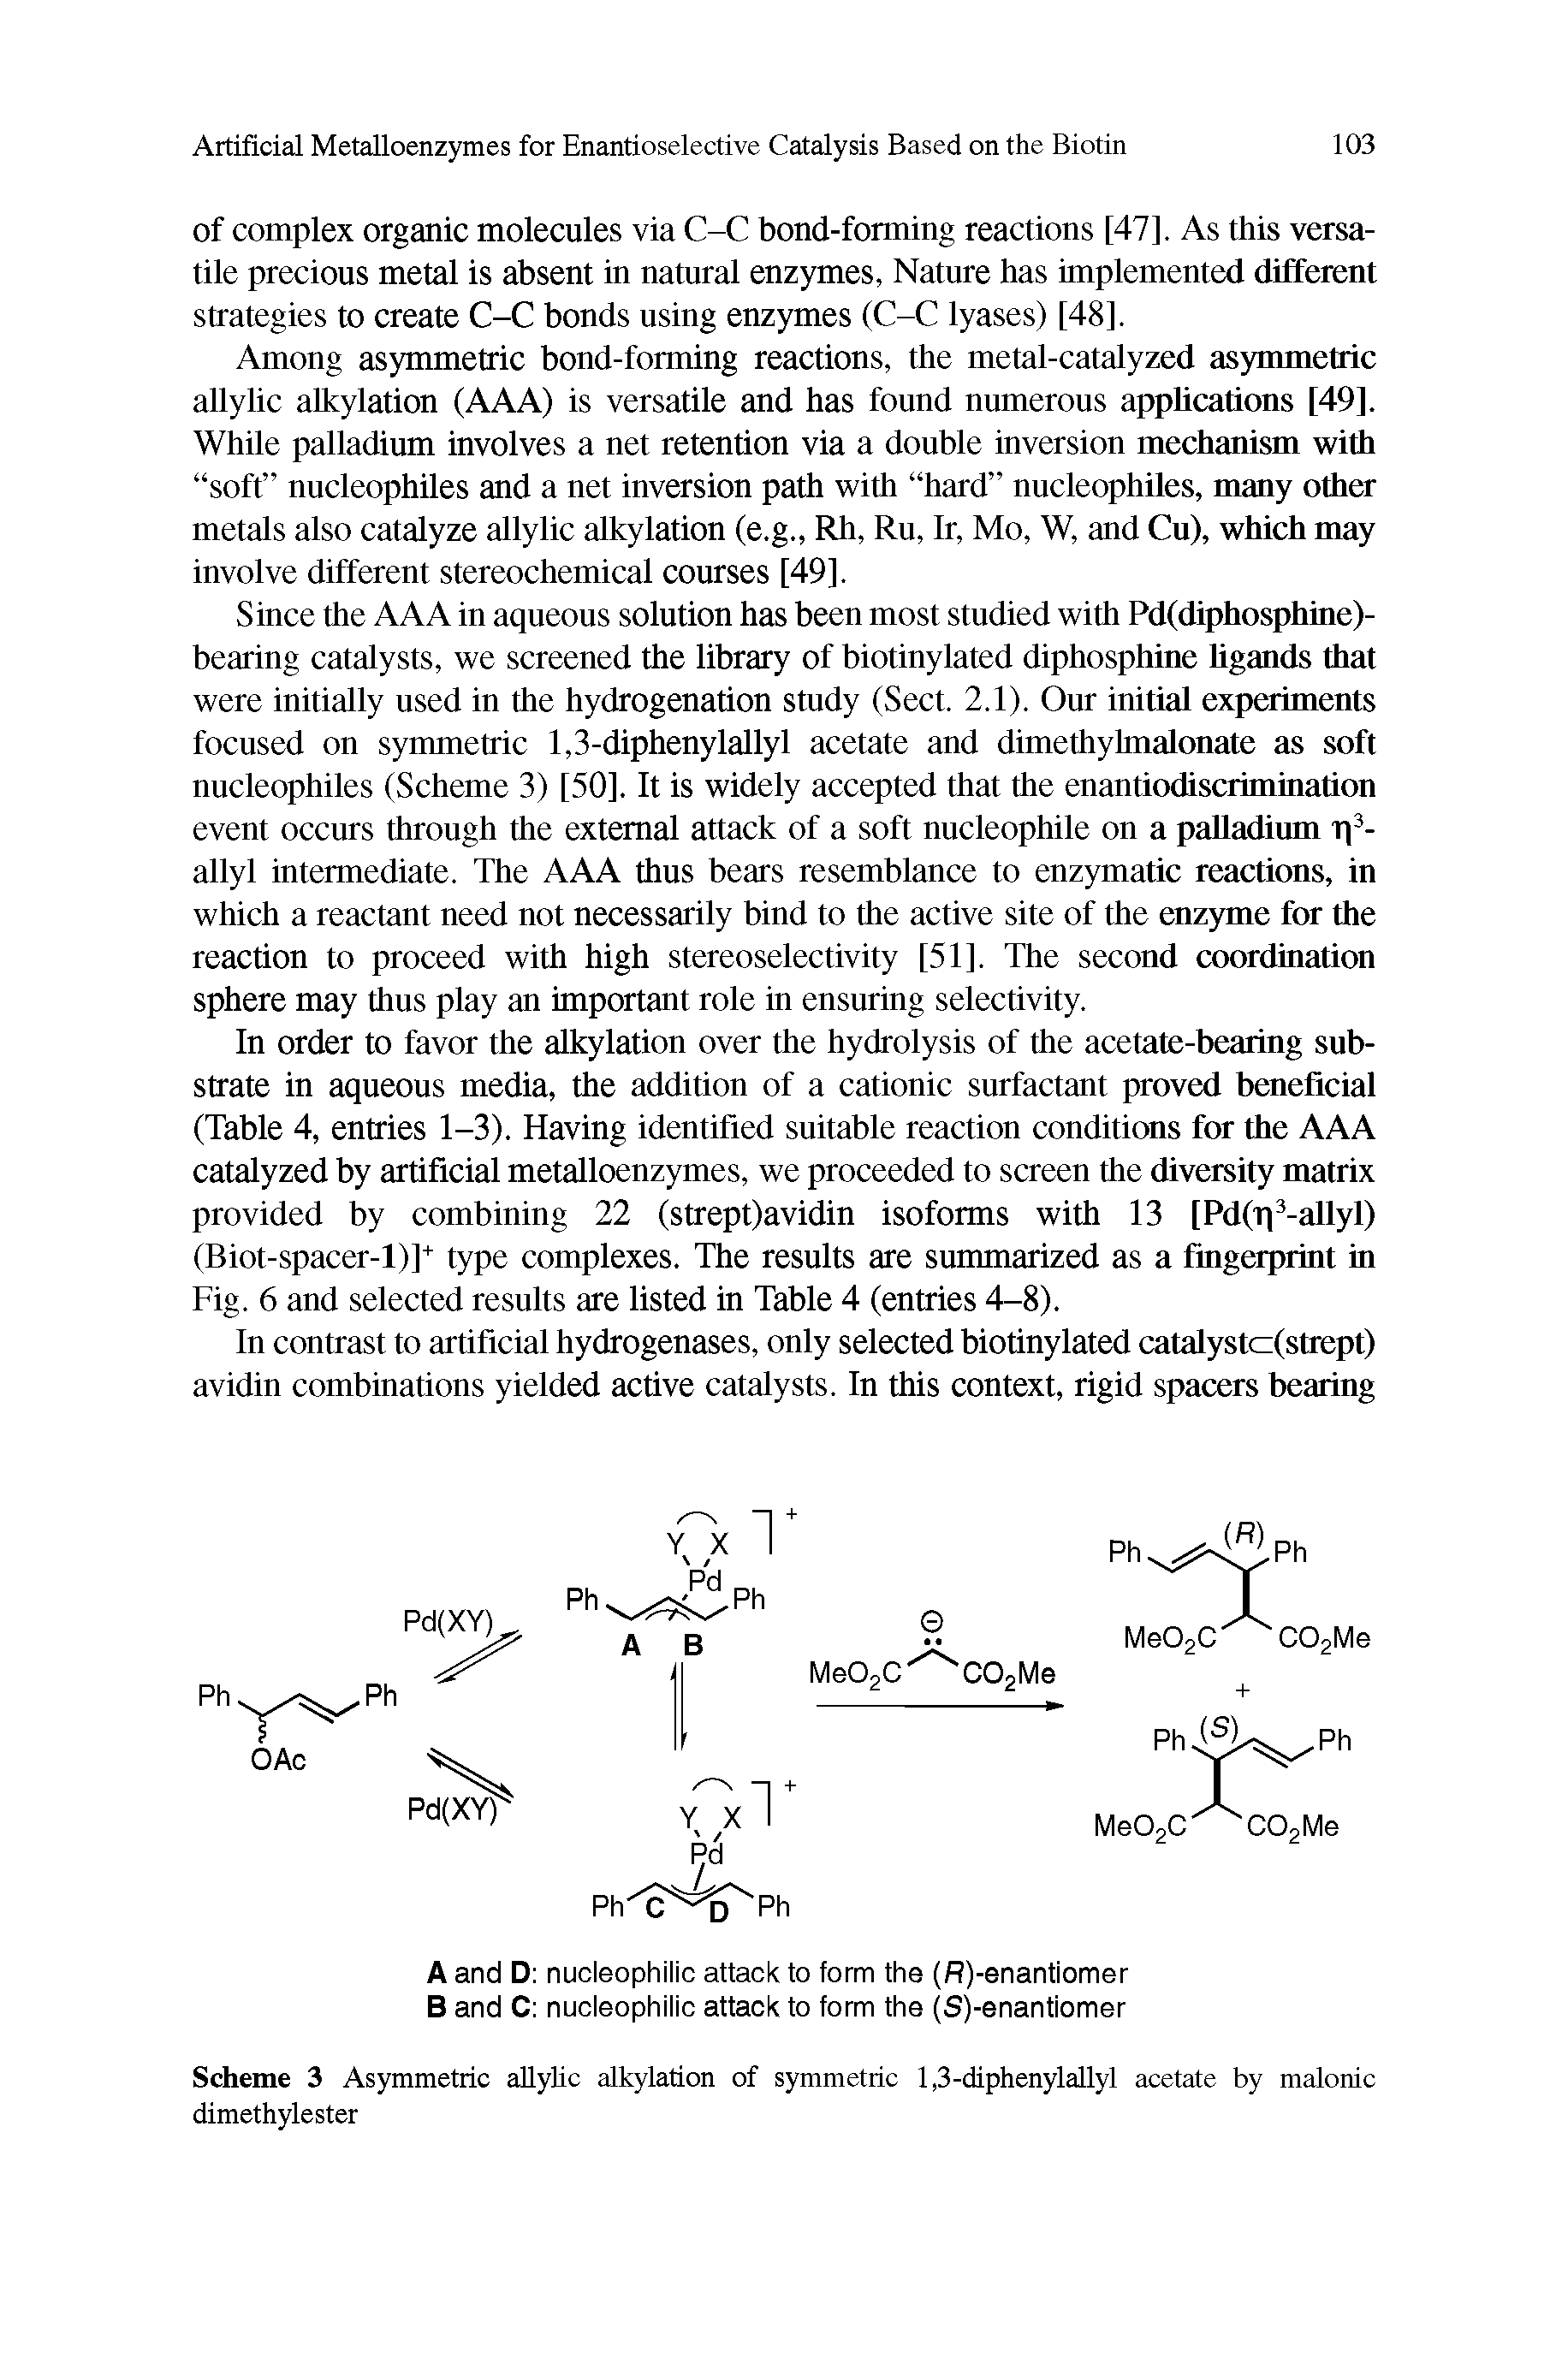 Scheme 3 Asymmetric allylic alkylation of symmetric 1,3-diphenylallyl acetate by malonic dimethylester...